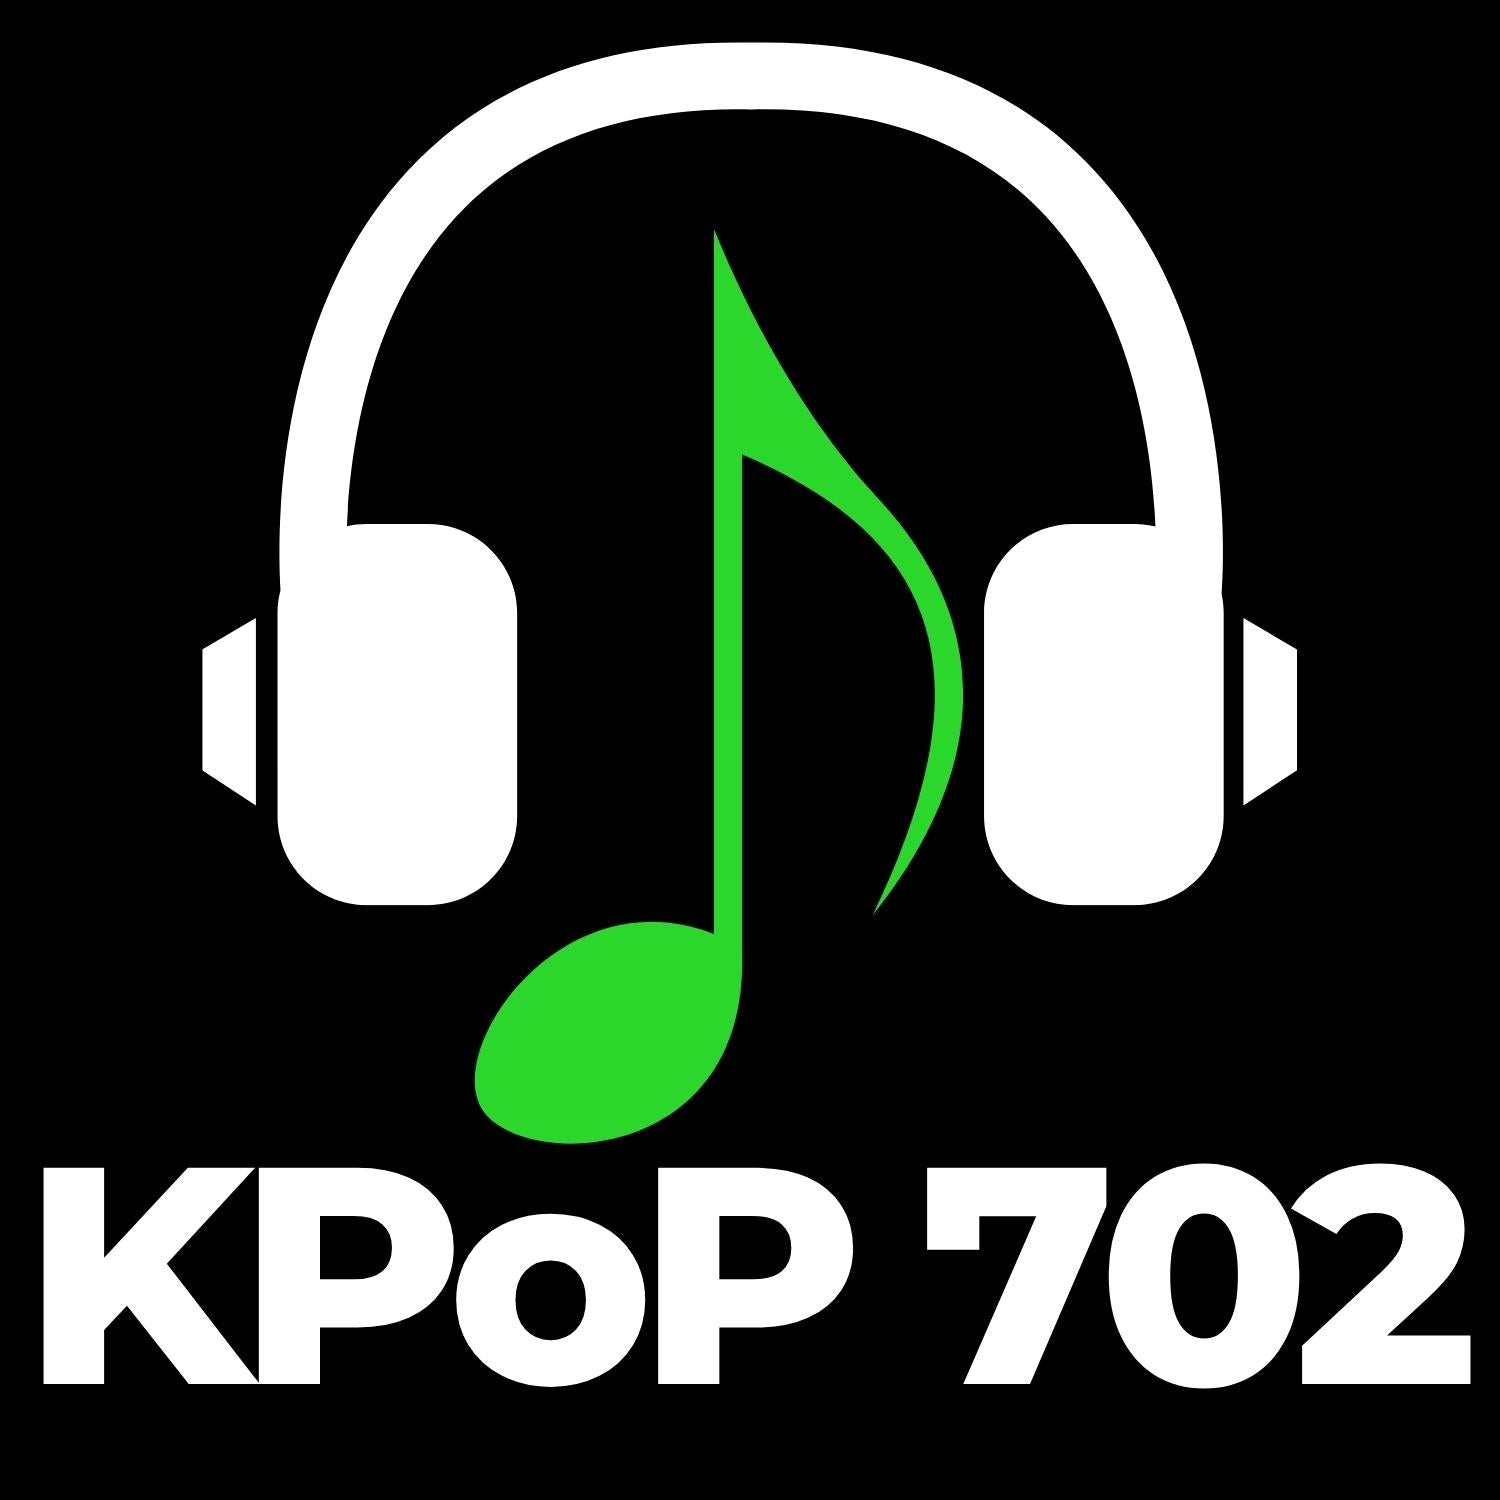 BLACKPINK – The 1st Full album [THE ALBUM] – KPoP702